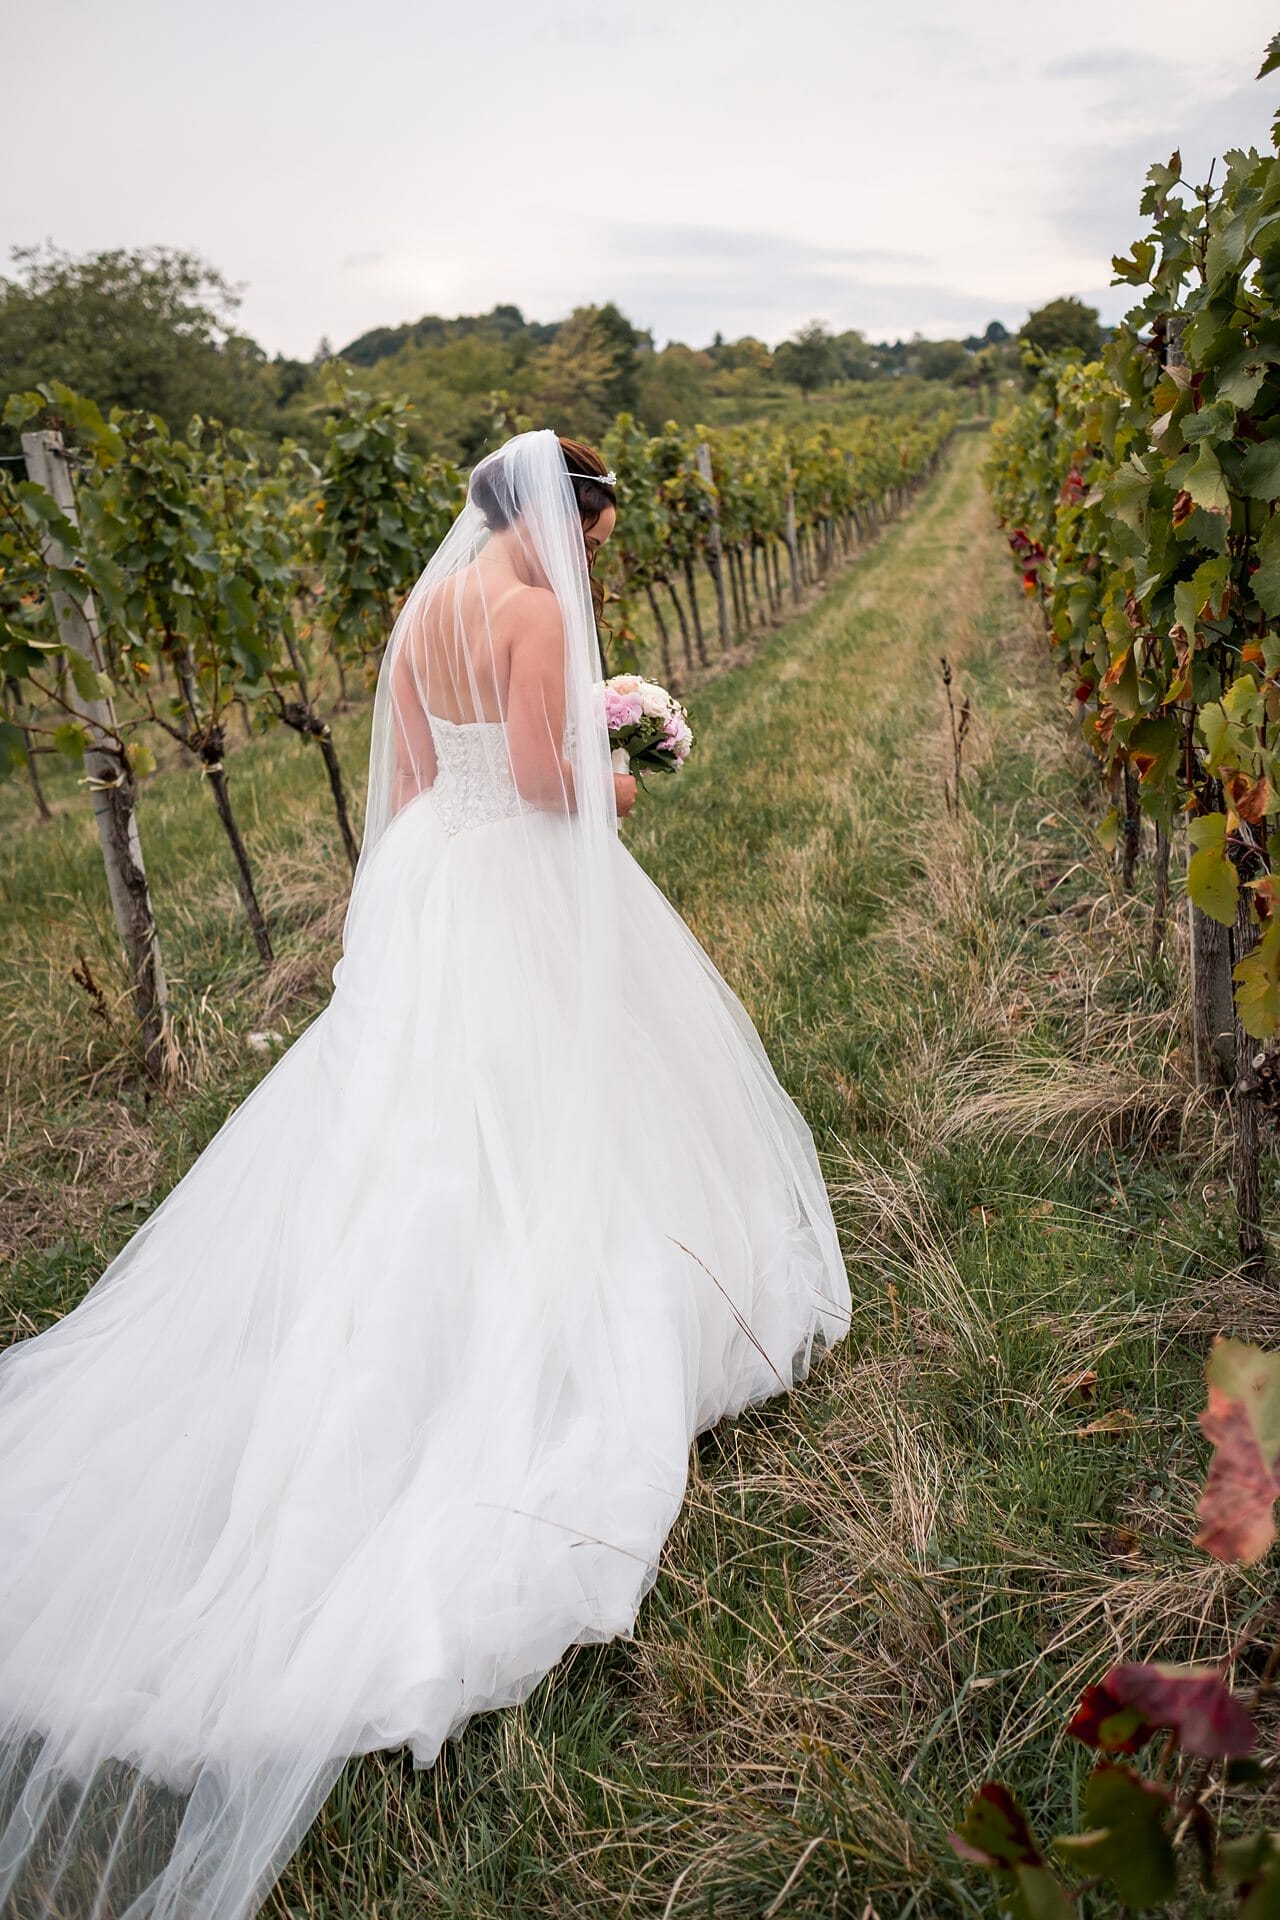 Eine Braut geht in ihrem Hochzeitskleid durch einen Weinberg.